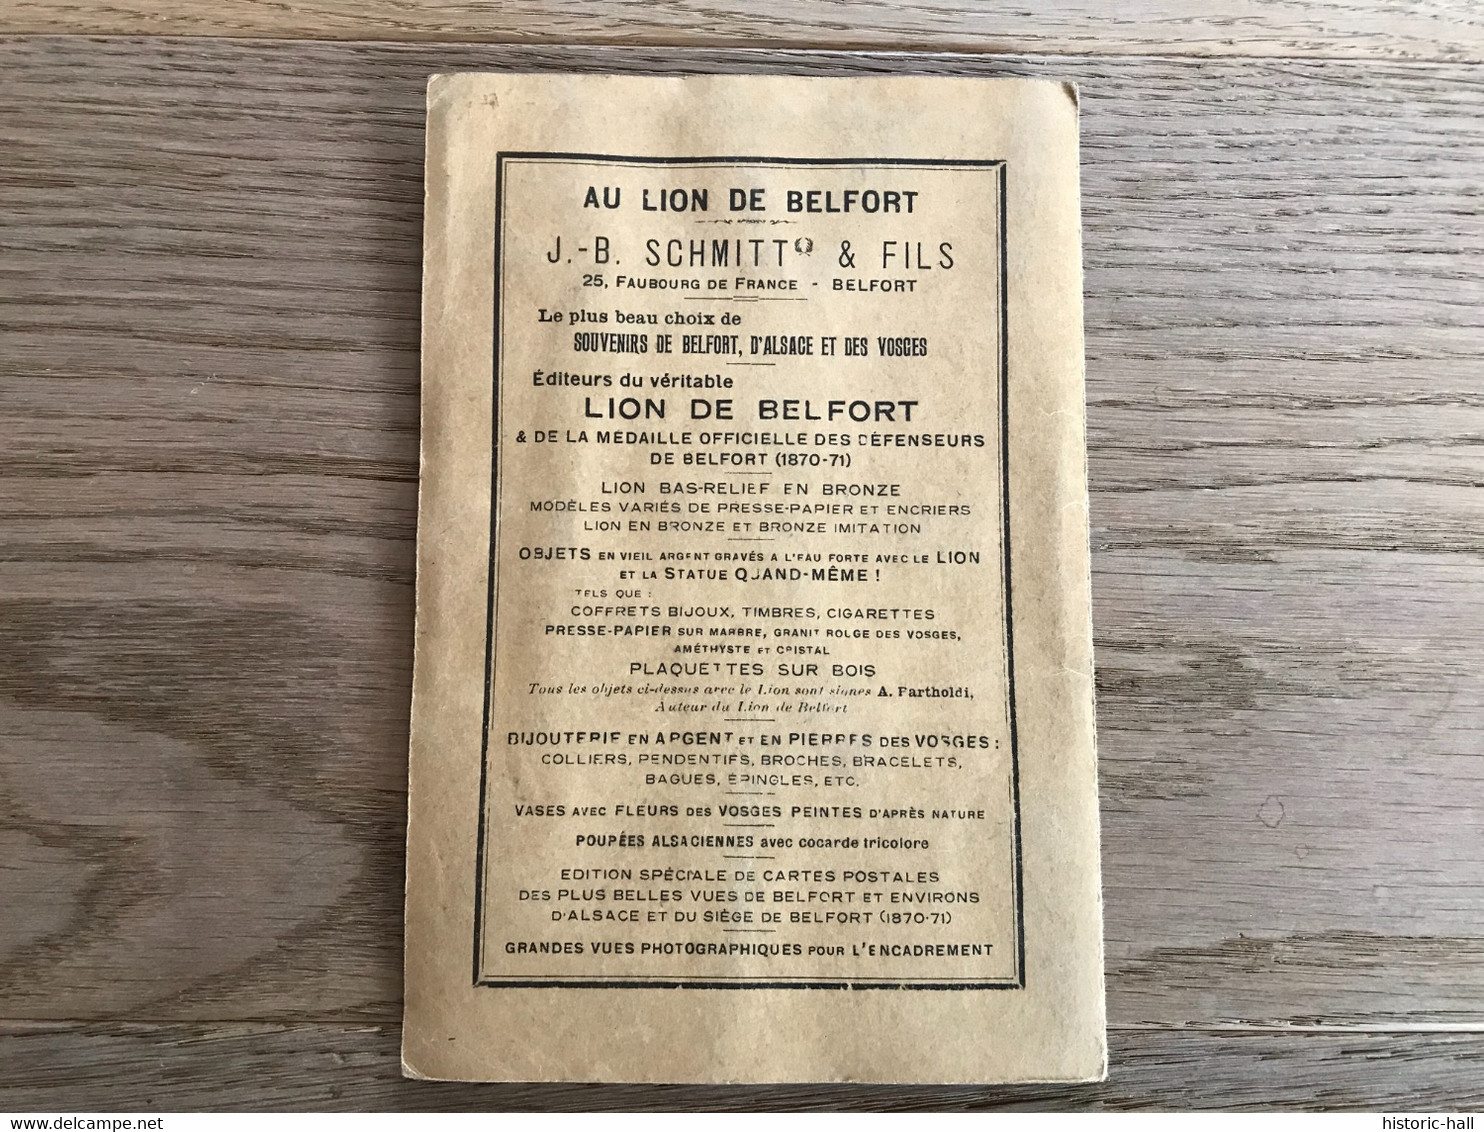 Carte De L’Etat Major - 1915 (?)  - COLMAR VESOUL - Cartes Topographiques